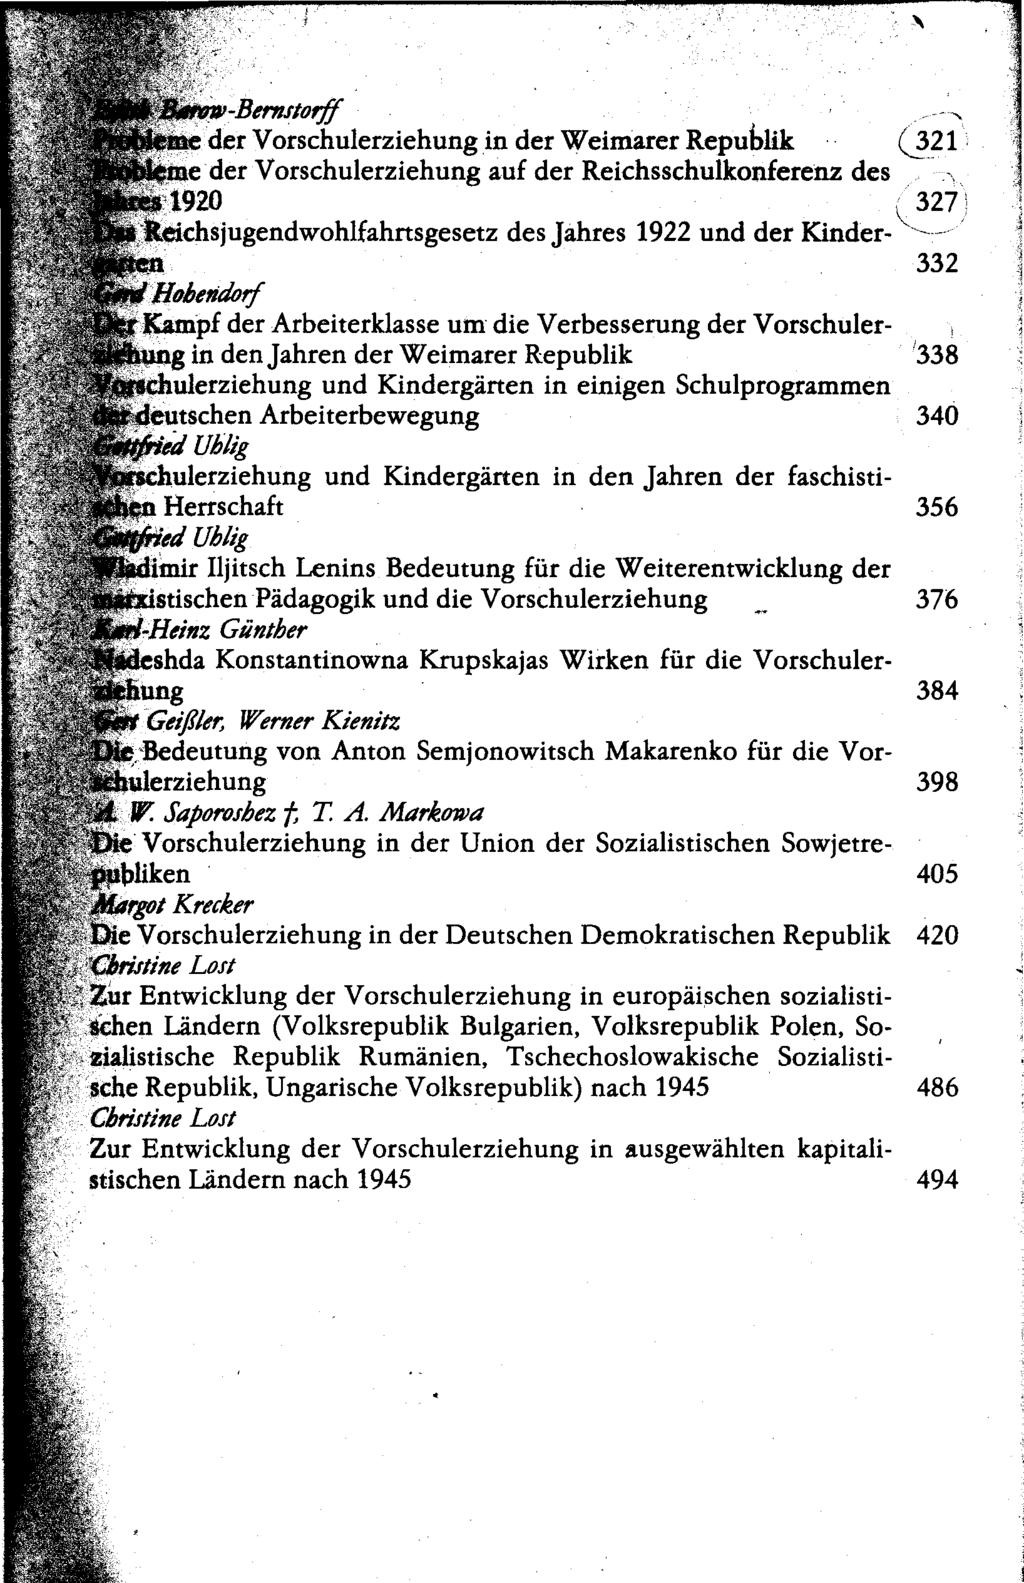 Barow-Bernstorff ^ der Vorschulerziehung in der Weimarer Republik (J321 e der Vorschulerziehung auf der Reichsschulkonferenz des 1920 327?